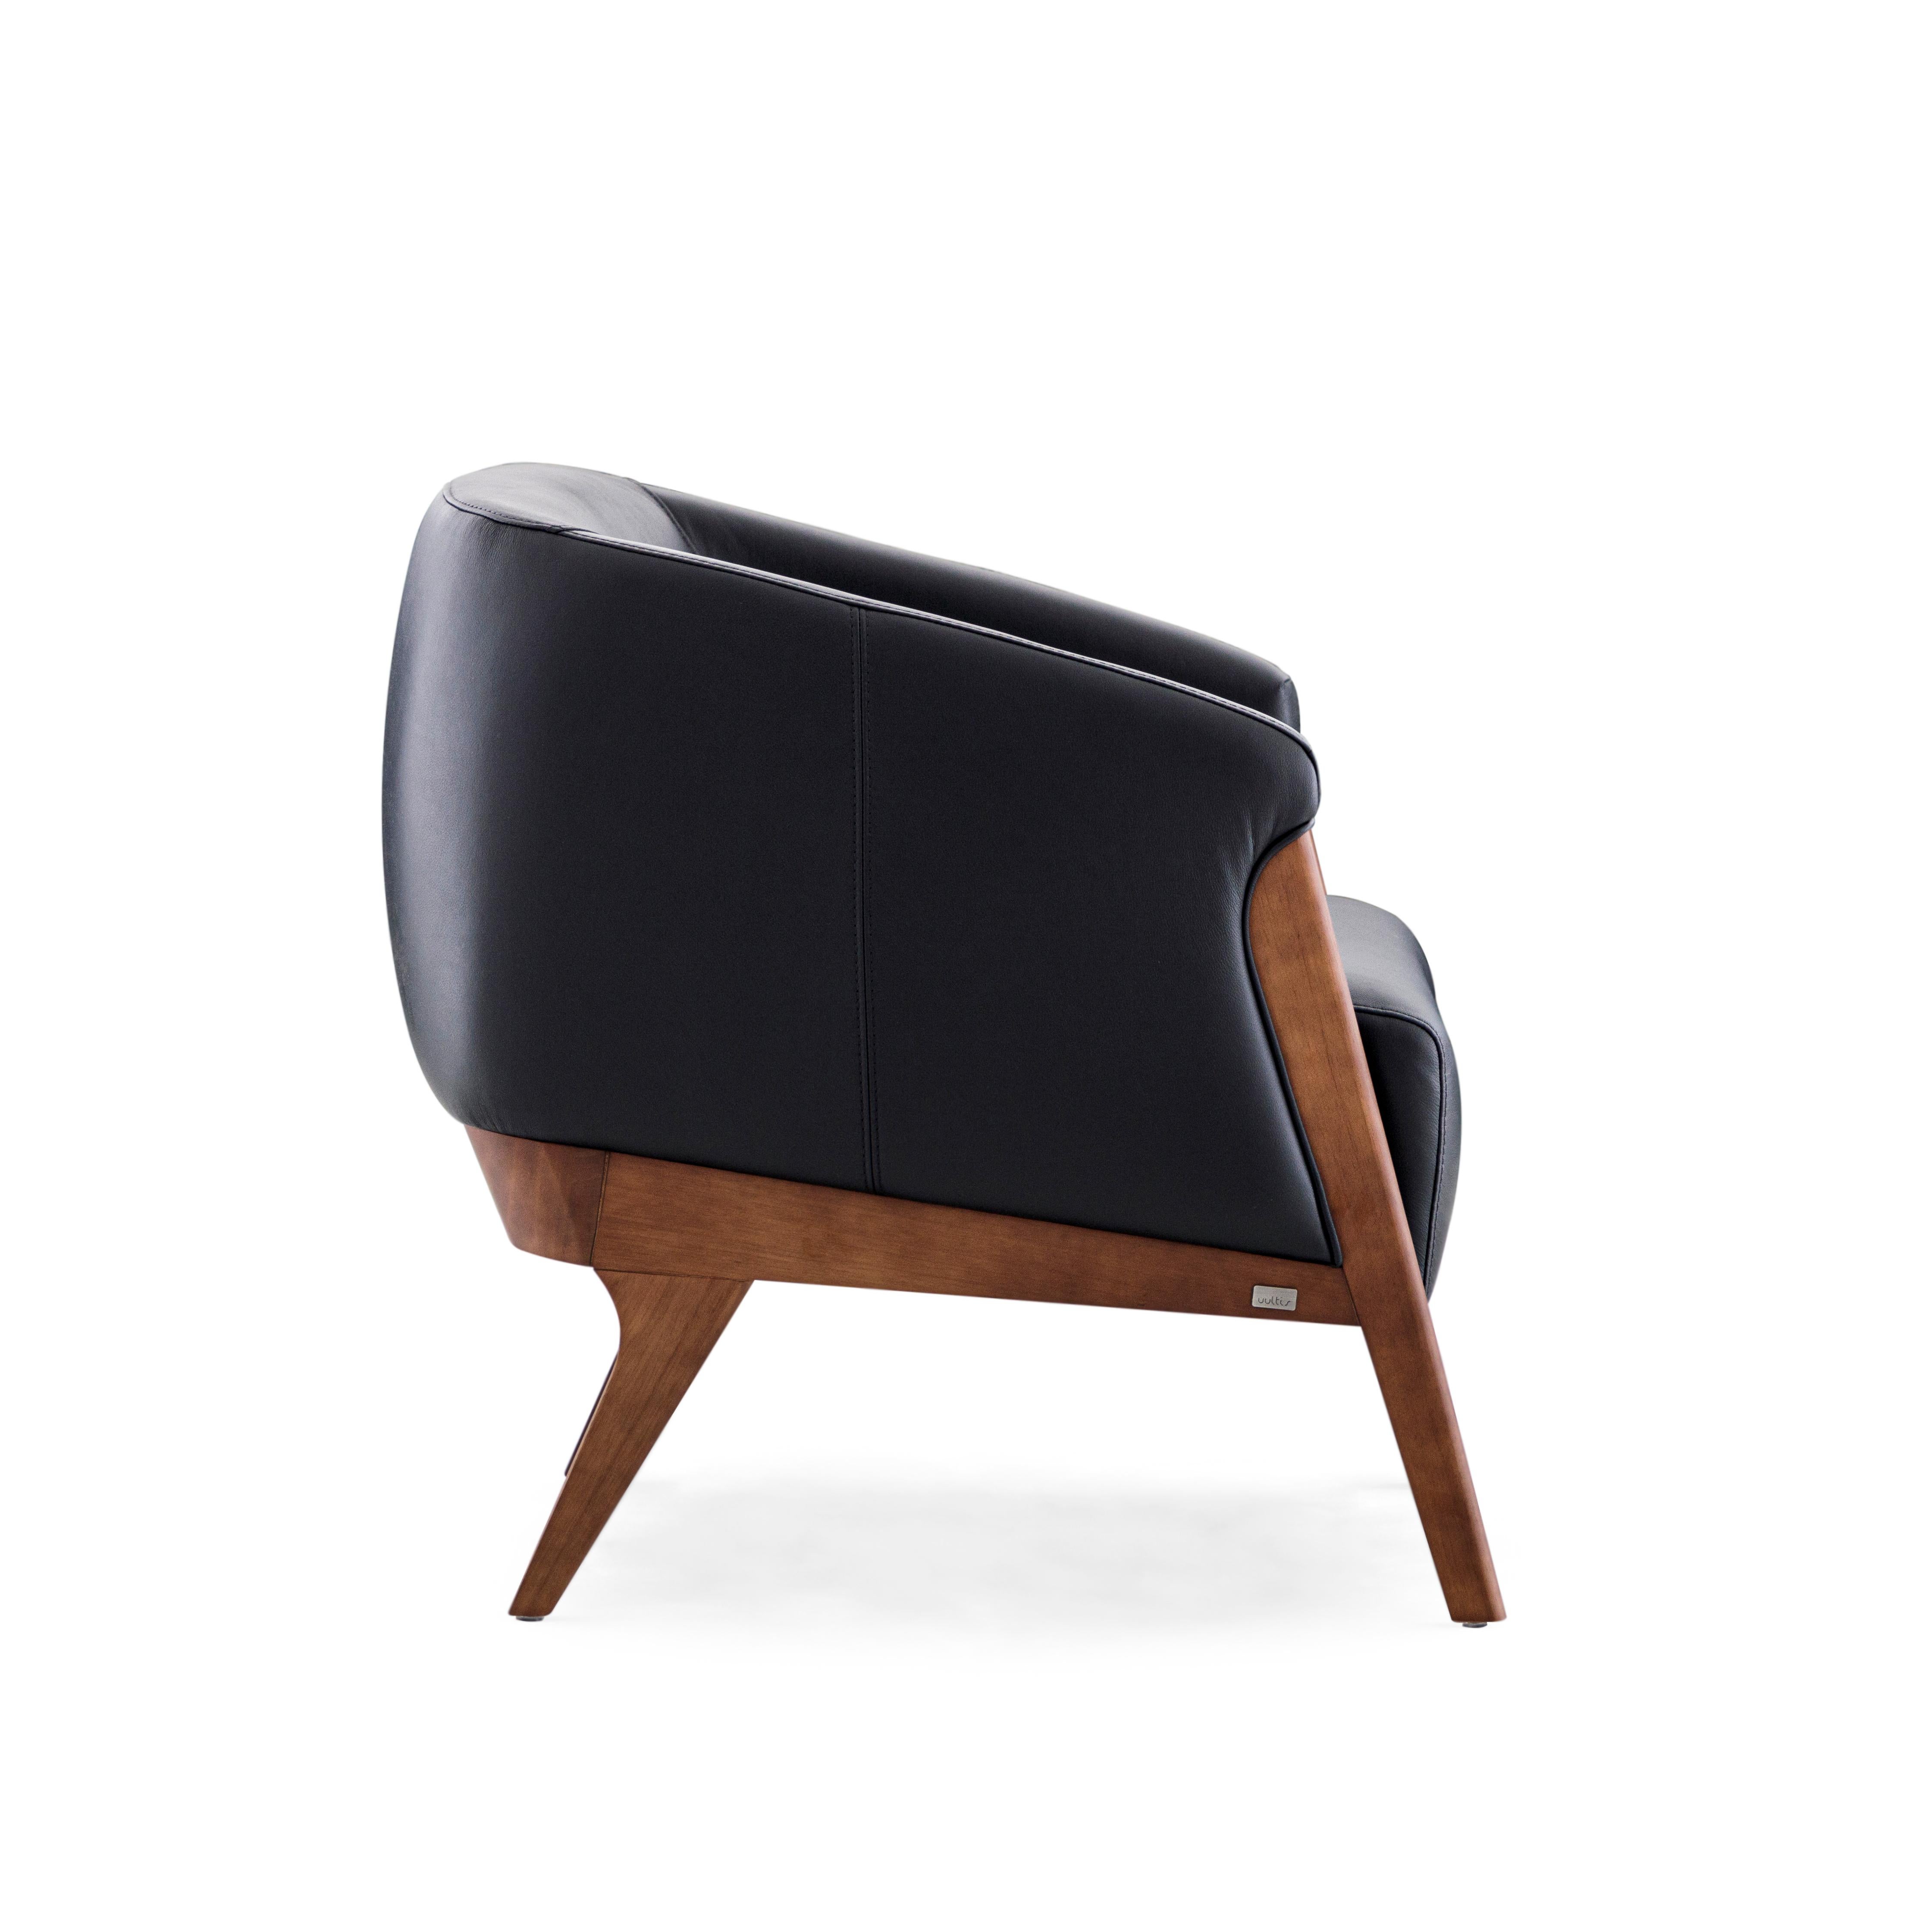 Der Sessel Abra ist mit seiner schönen schwarzen Polsterung und dem Gestell aus Walnussholz eine einladende Ergänzung für jeden Raum in Ihrer Einrichtung. Dieser Sessel wurde von unserem fantastischen Team aus Architekten und Designern von Uultis